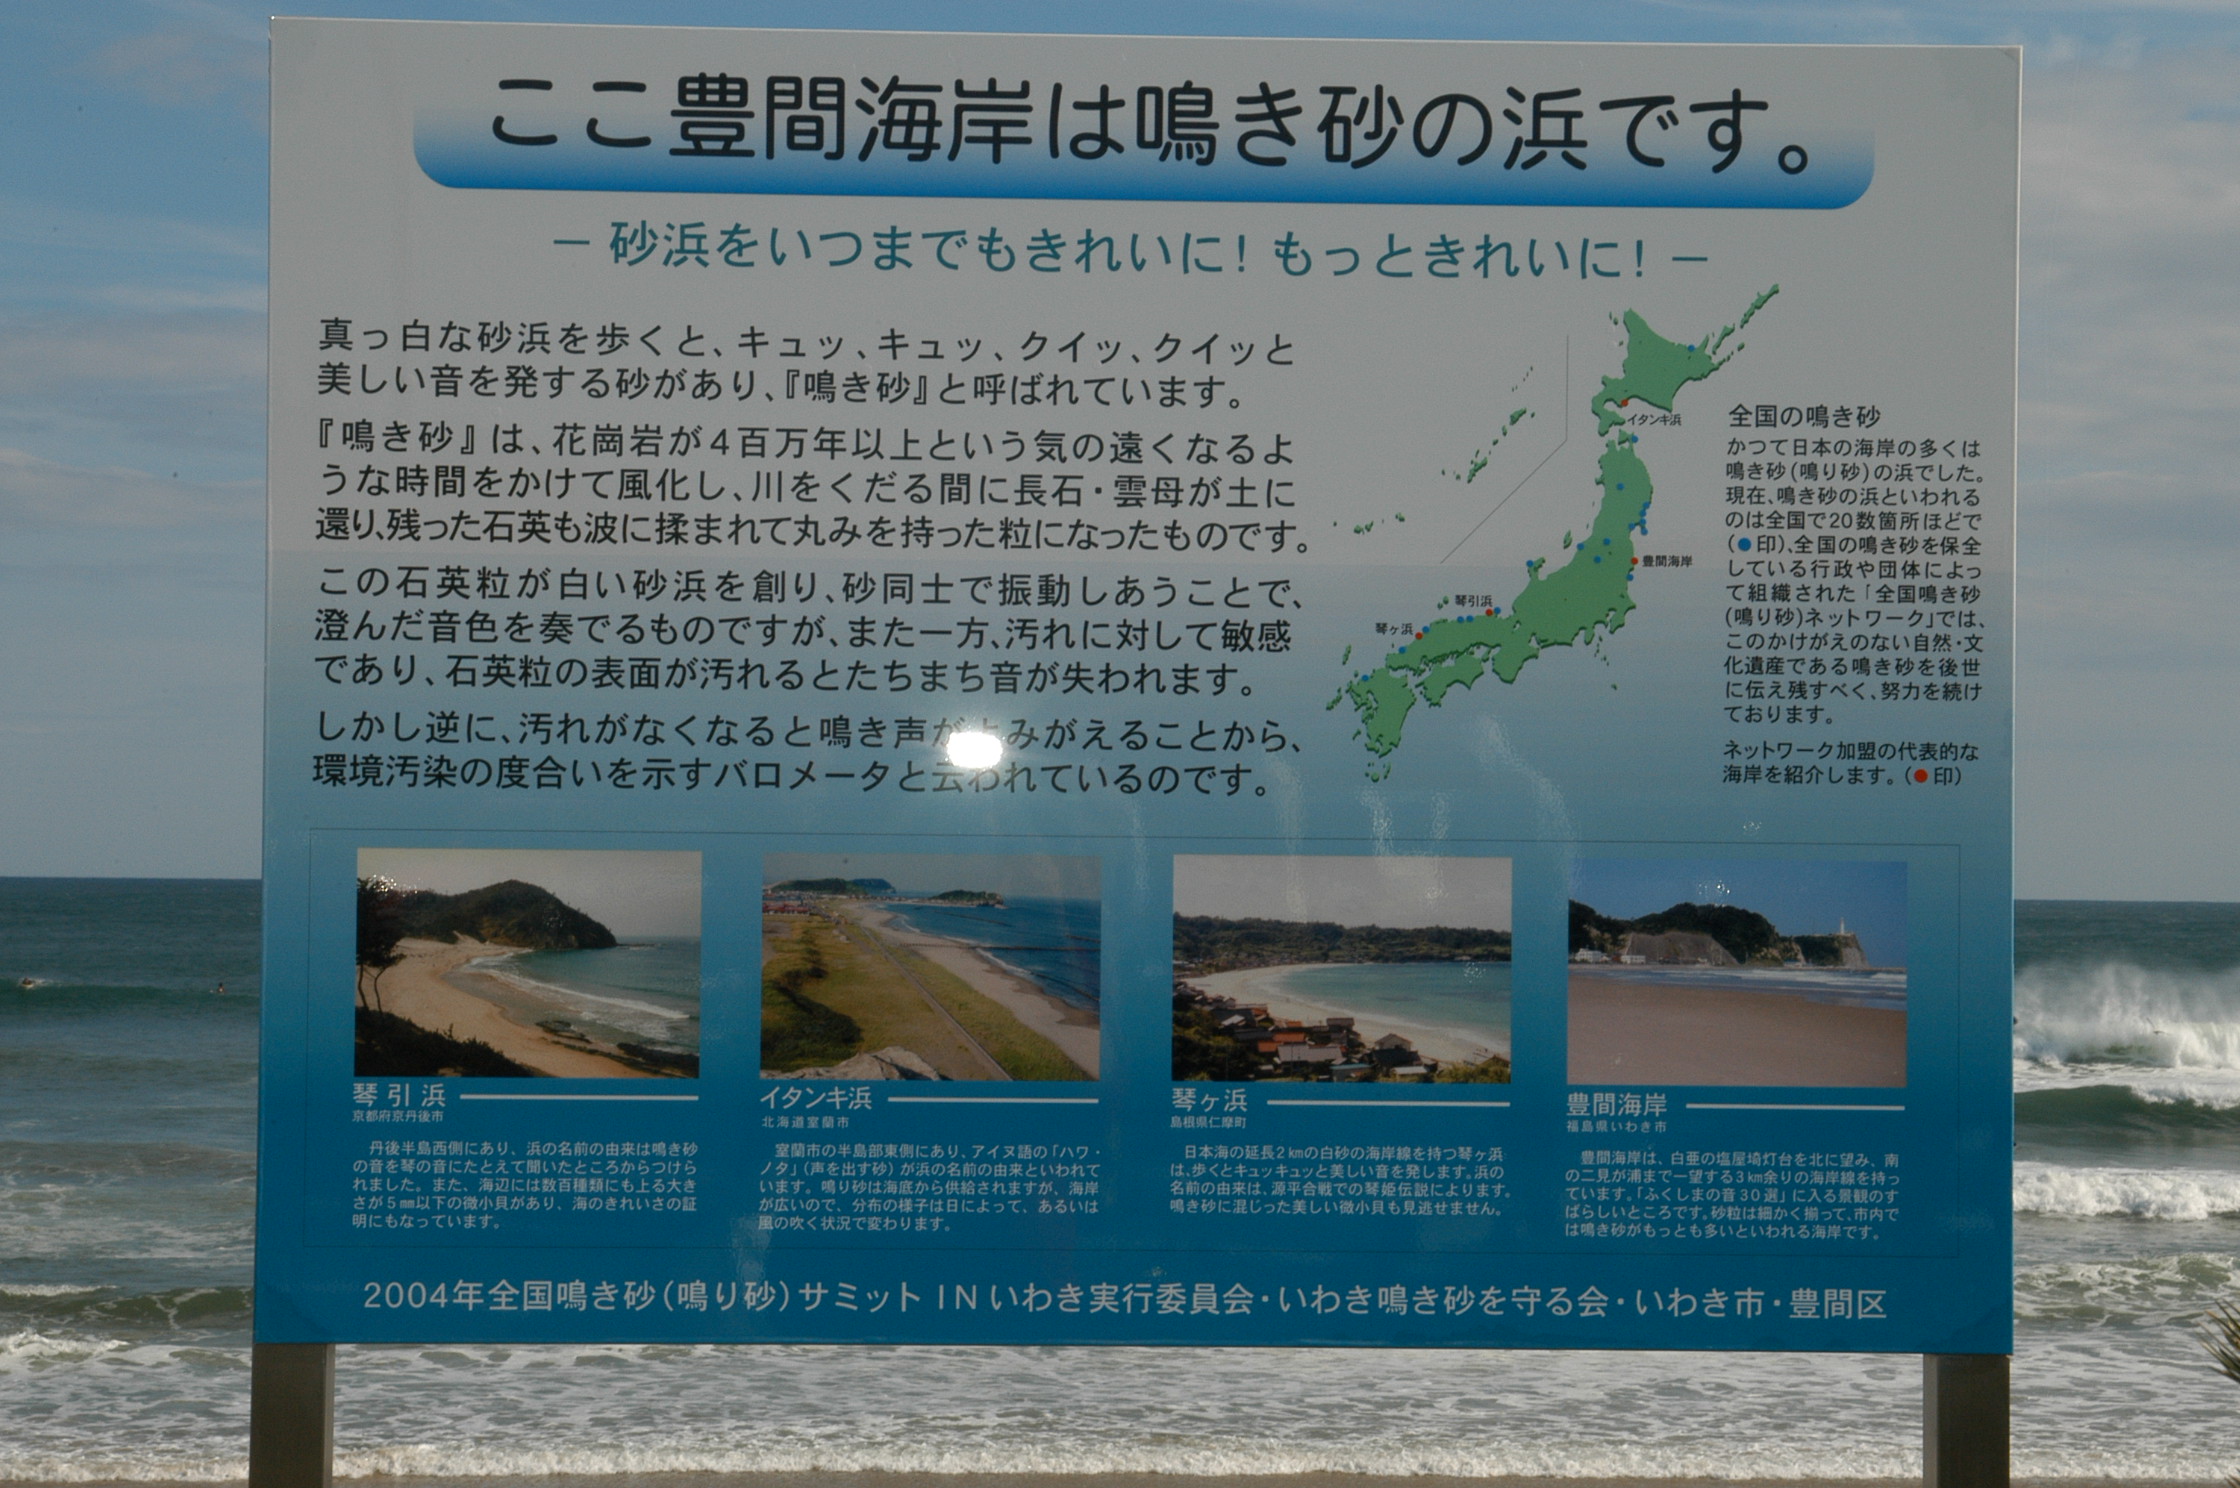 5 豊間海岸の鳴き砂表示板(平成16年10月、いわき市撮影)